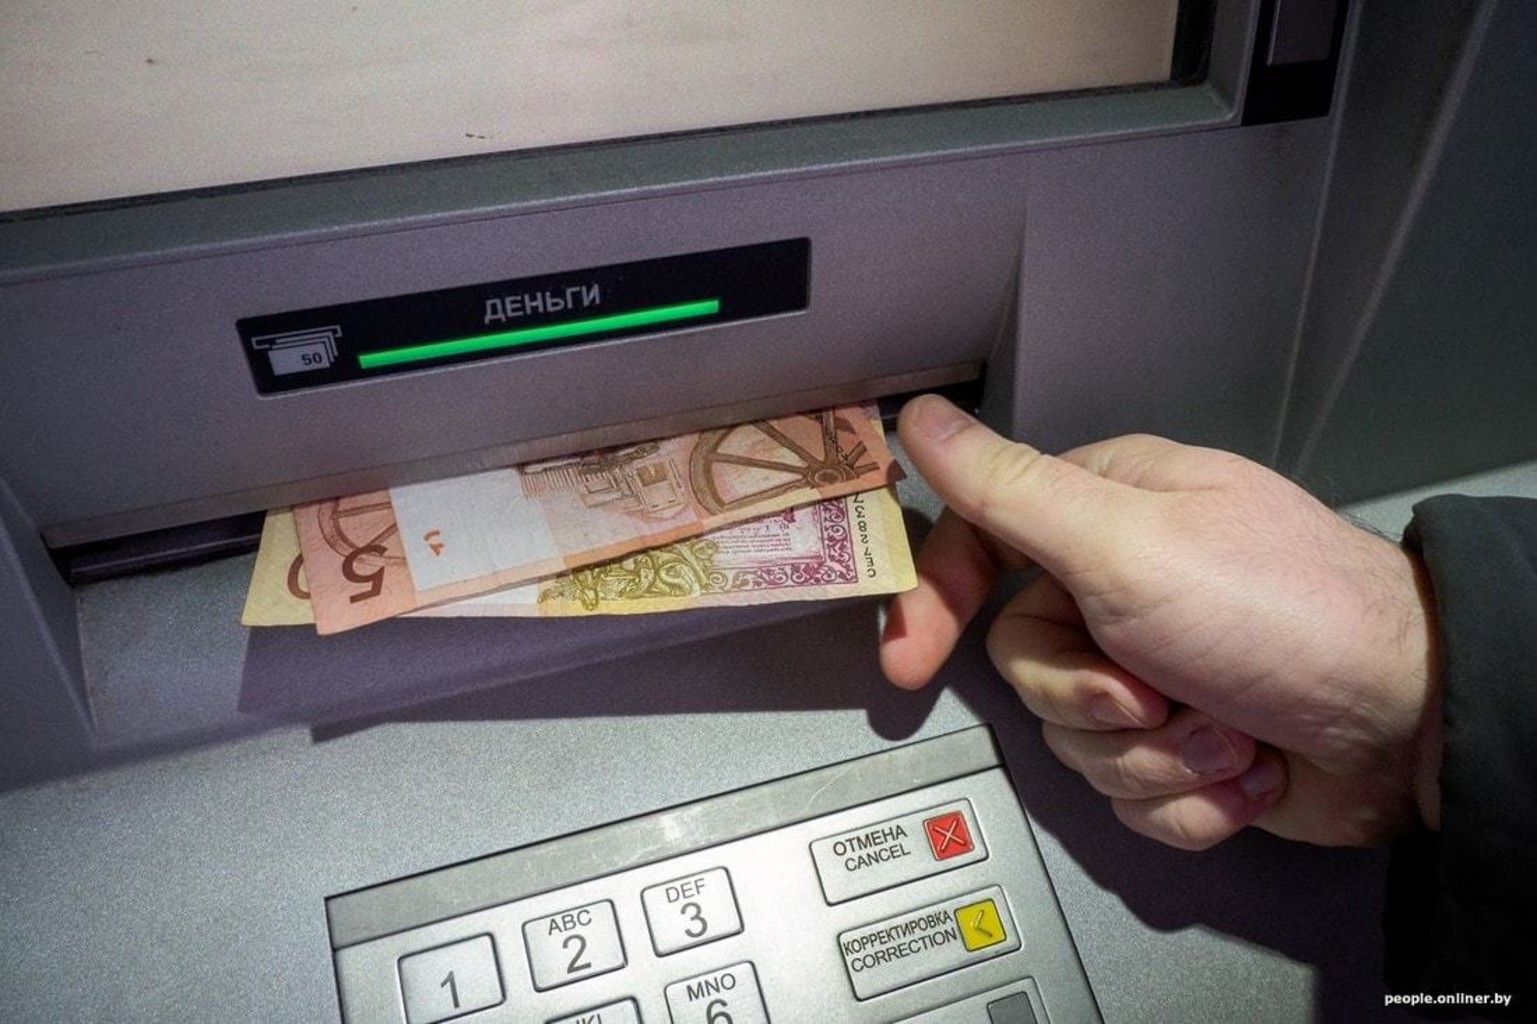 Снимать деньги с банковских счетов. Деньги из банкомата. Белорусские купюры в банкомате. Выдача денег в банкомате. Снятие денег в банкомате.